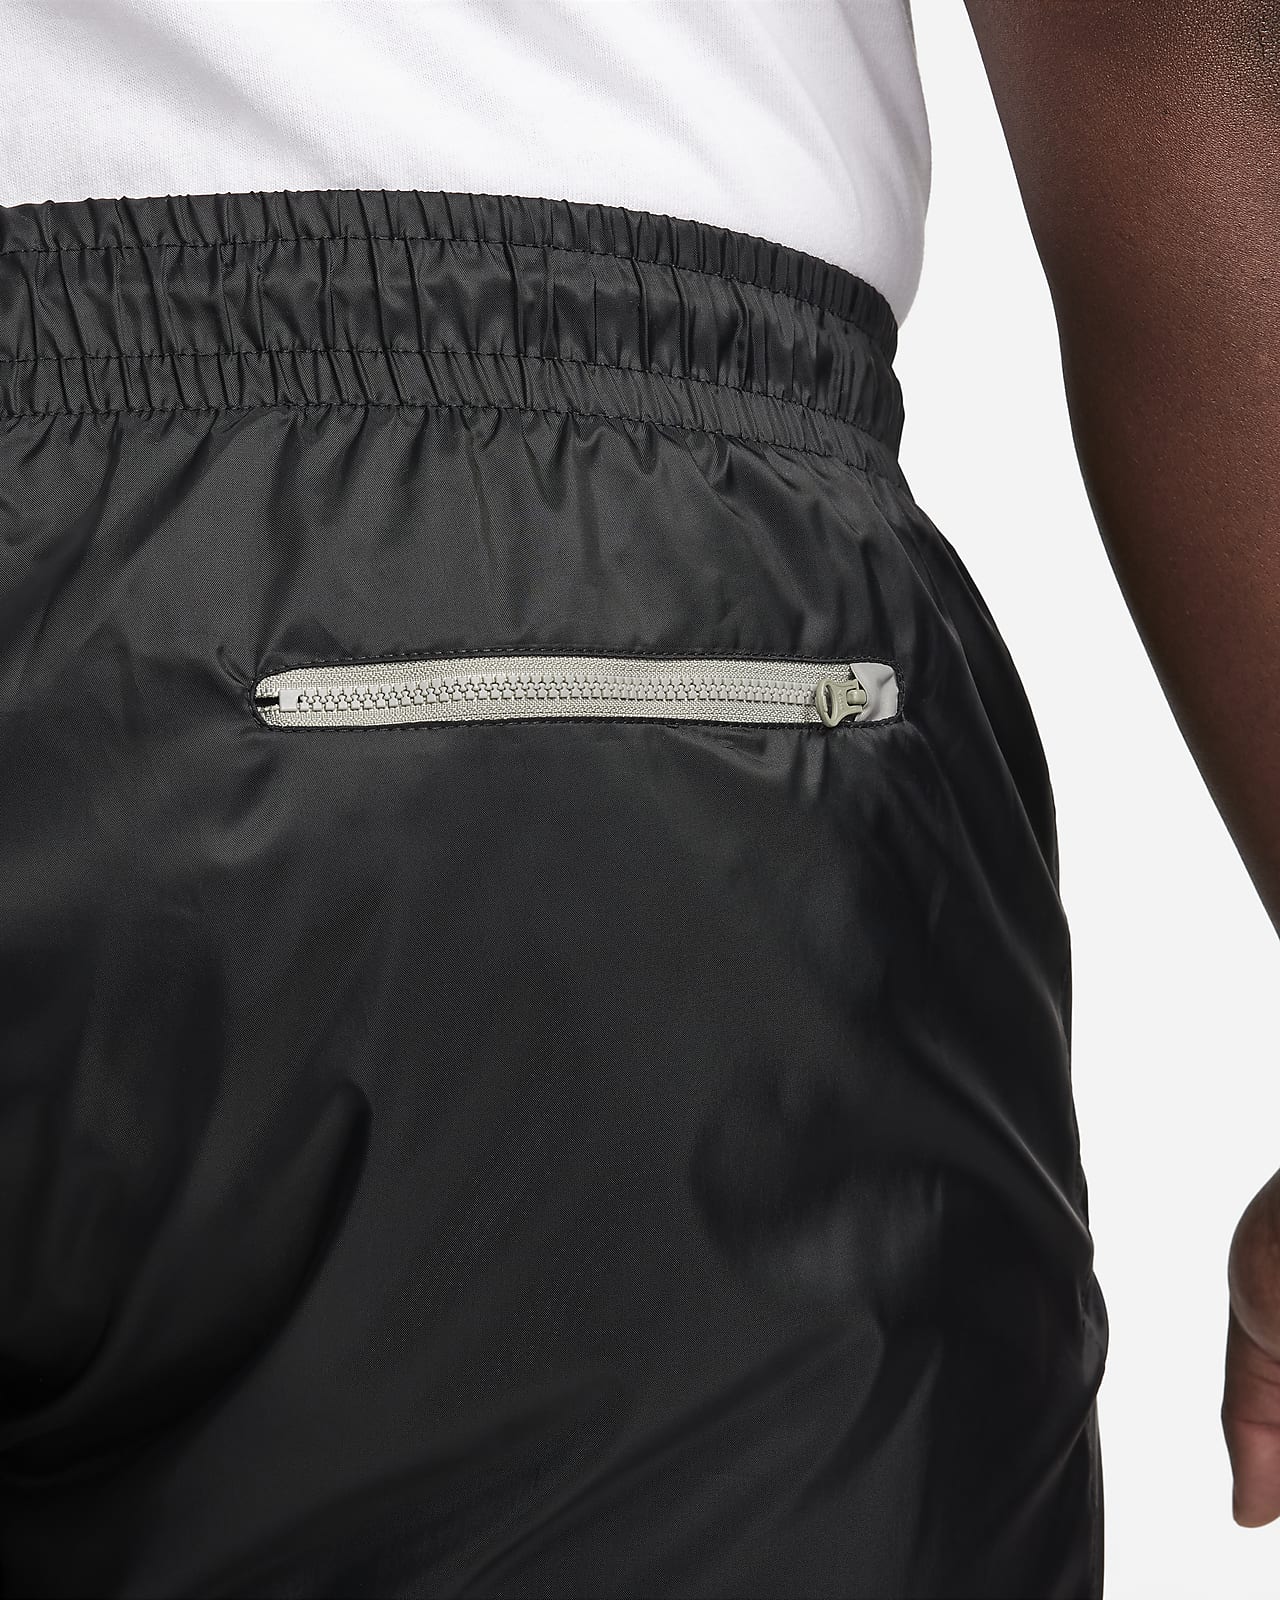 Men's Windrunner Woven Lined Pants from Nike